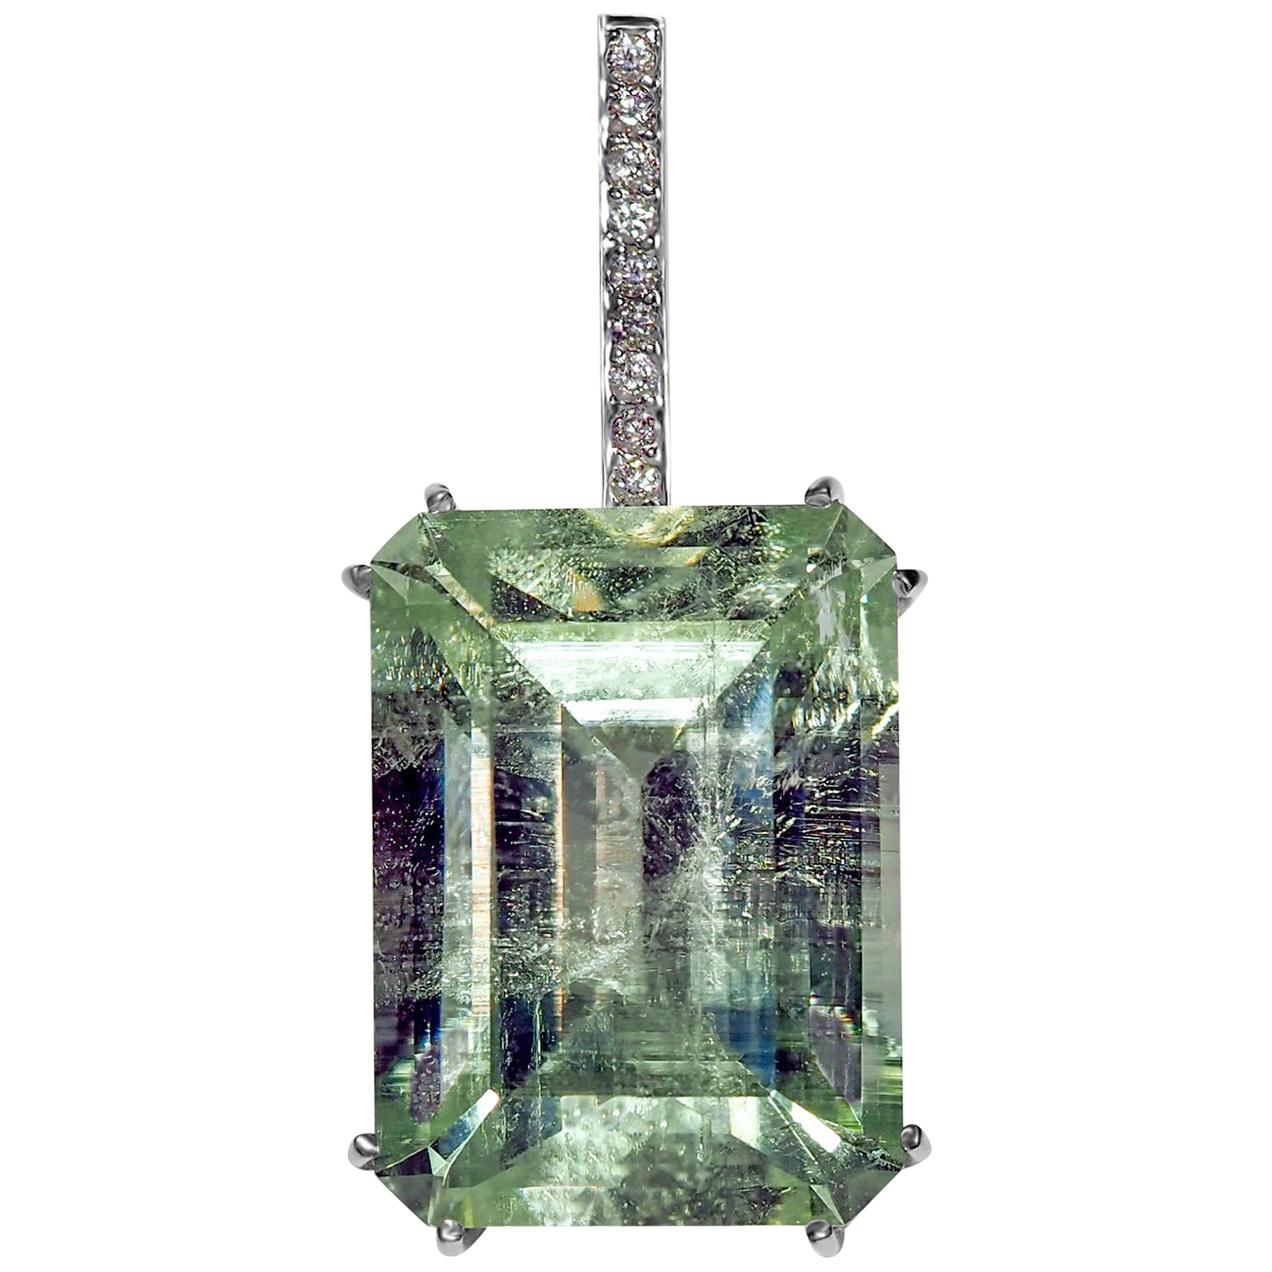 Collier unisexe art avec pendentif en or blanc, béryl et diamants avec pierres précieuses vertes et émeraudes